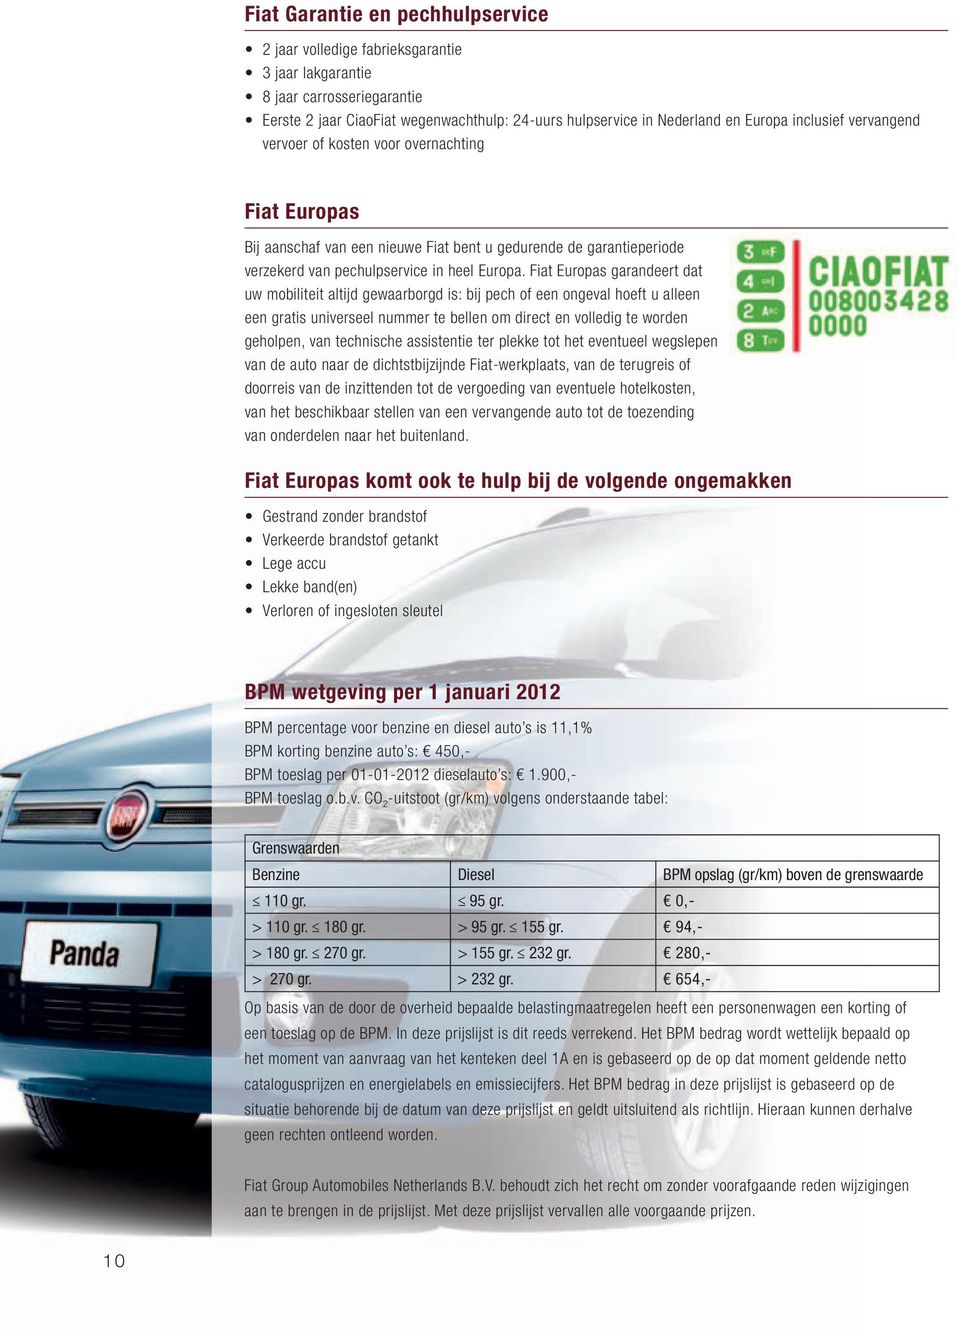 Fiat Europas garandeert dat uw mobiliteit altijd gewaarborgd is: bij pech of een ongeval hoeft u alleen een gratis universeel nummer te bellen om direct en volledig te worden geholpen, van technische